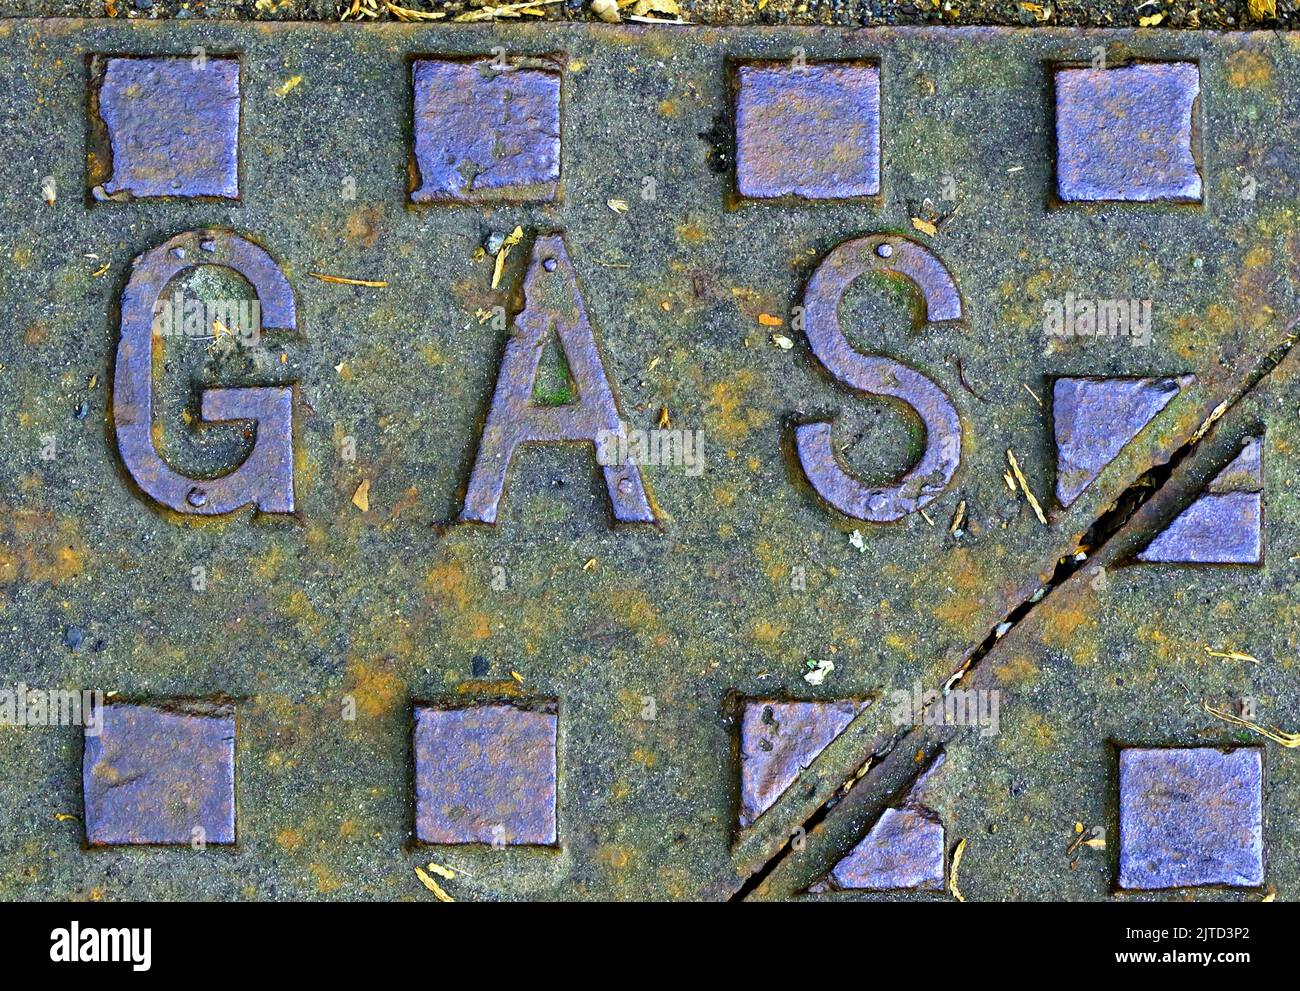 Réseau d'iron d'alimentation en gaz, fonte estampée avec le mot gaz Banque D'Images